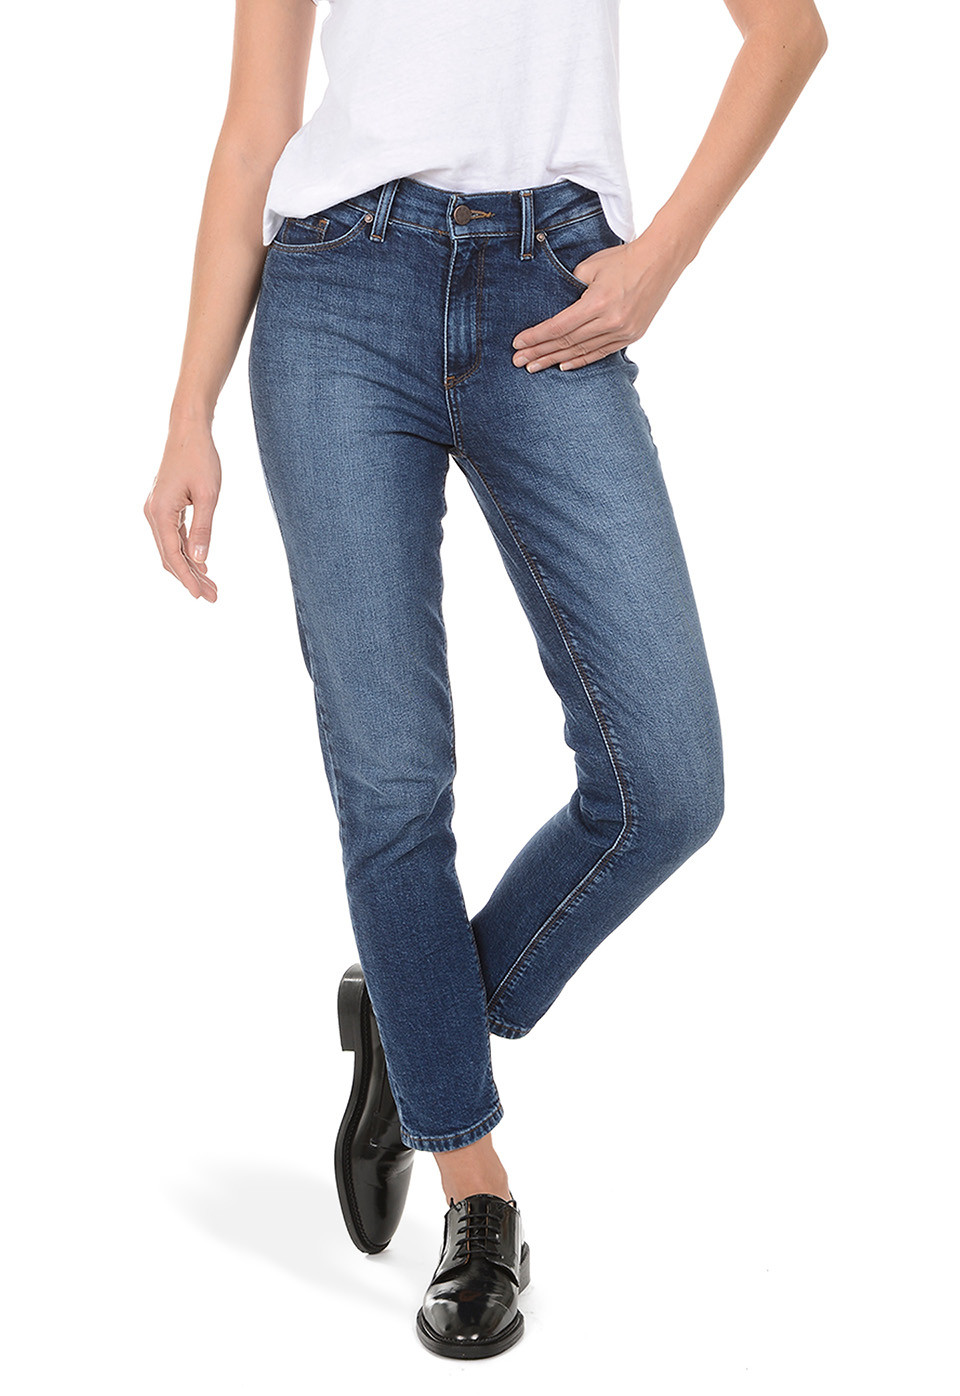 lightweight jeans for summer